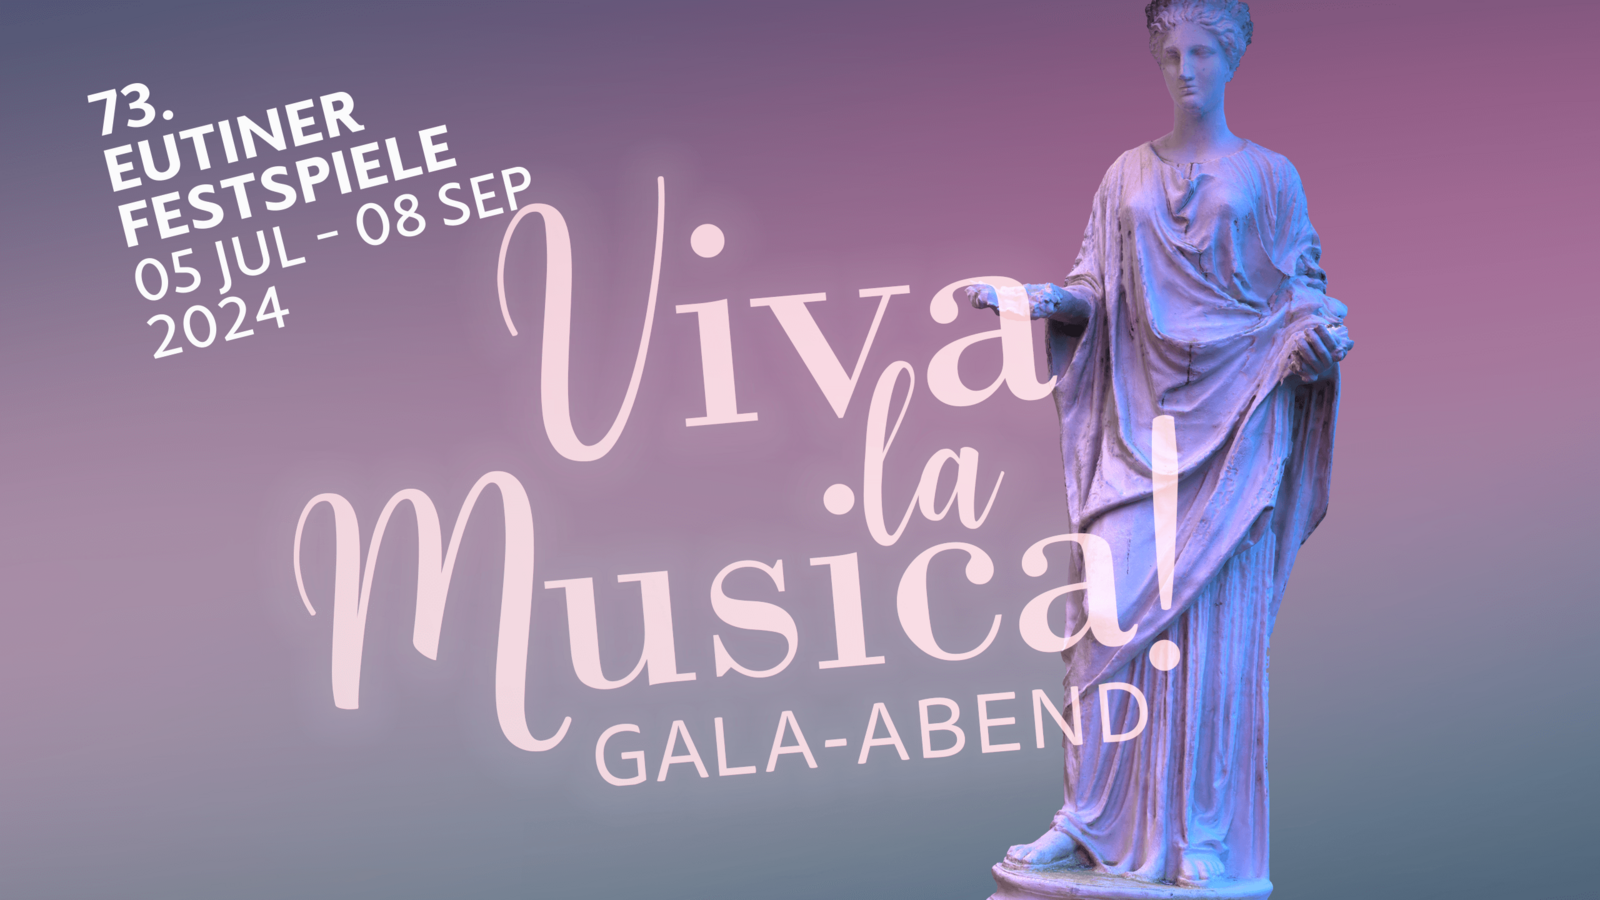 Viva la Musica! – Gala-Abend im Doppelpack